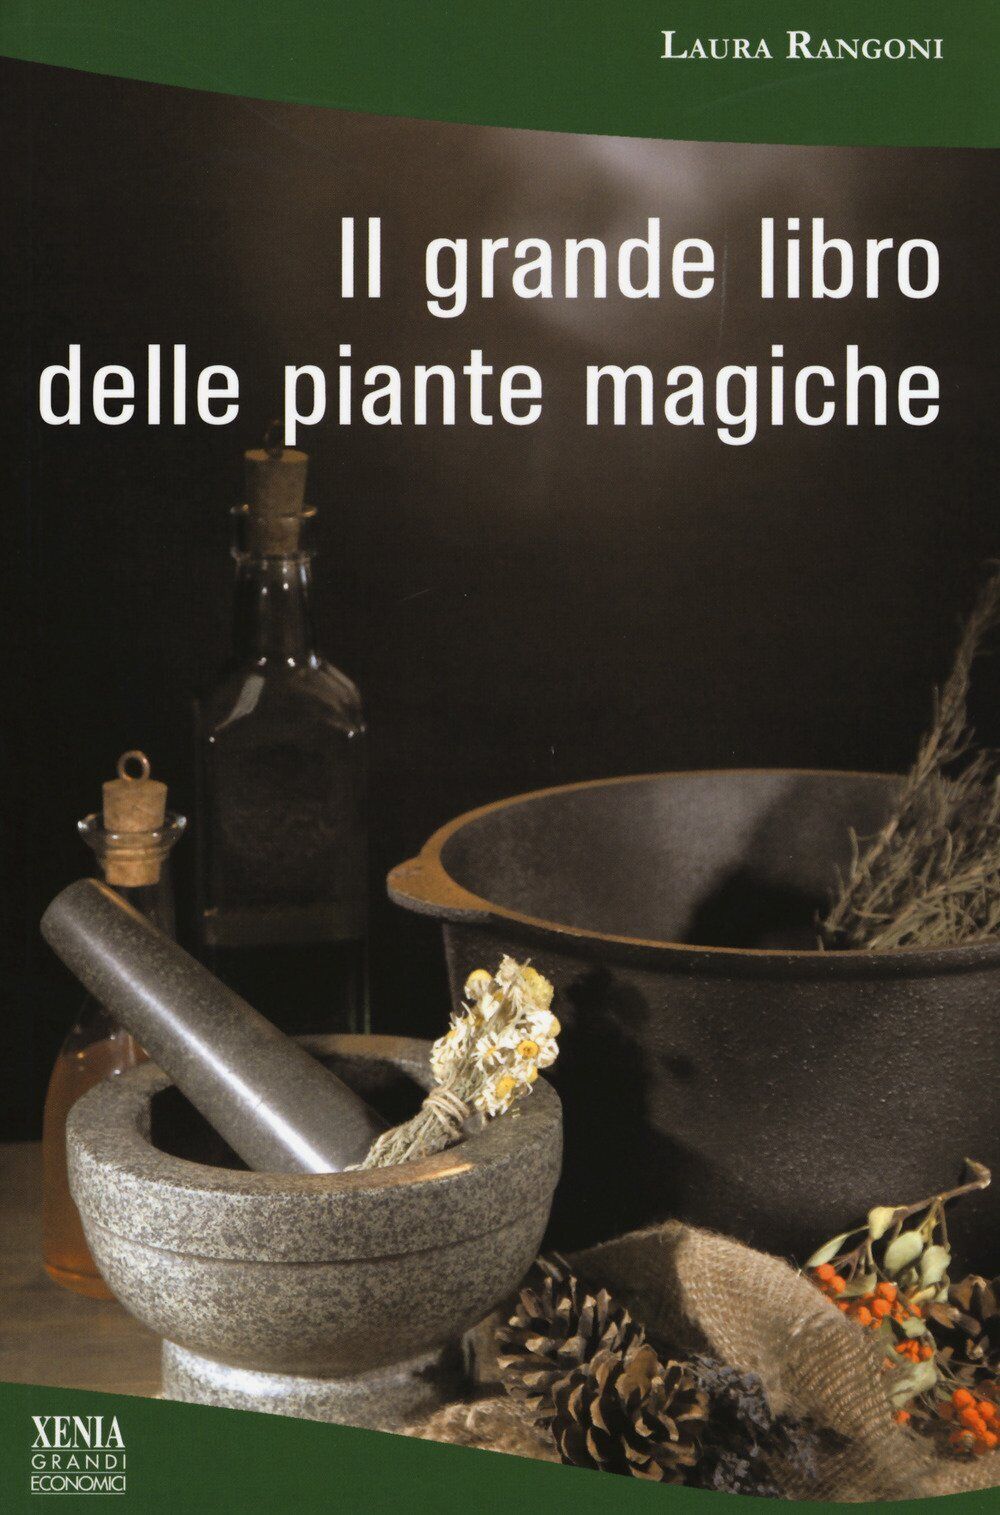 Il grande libro delle piante magiche -  Laura Rangoni - Xenia, 2017